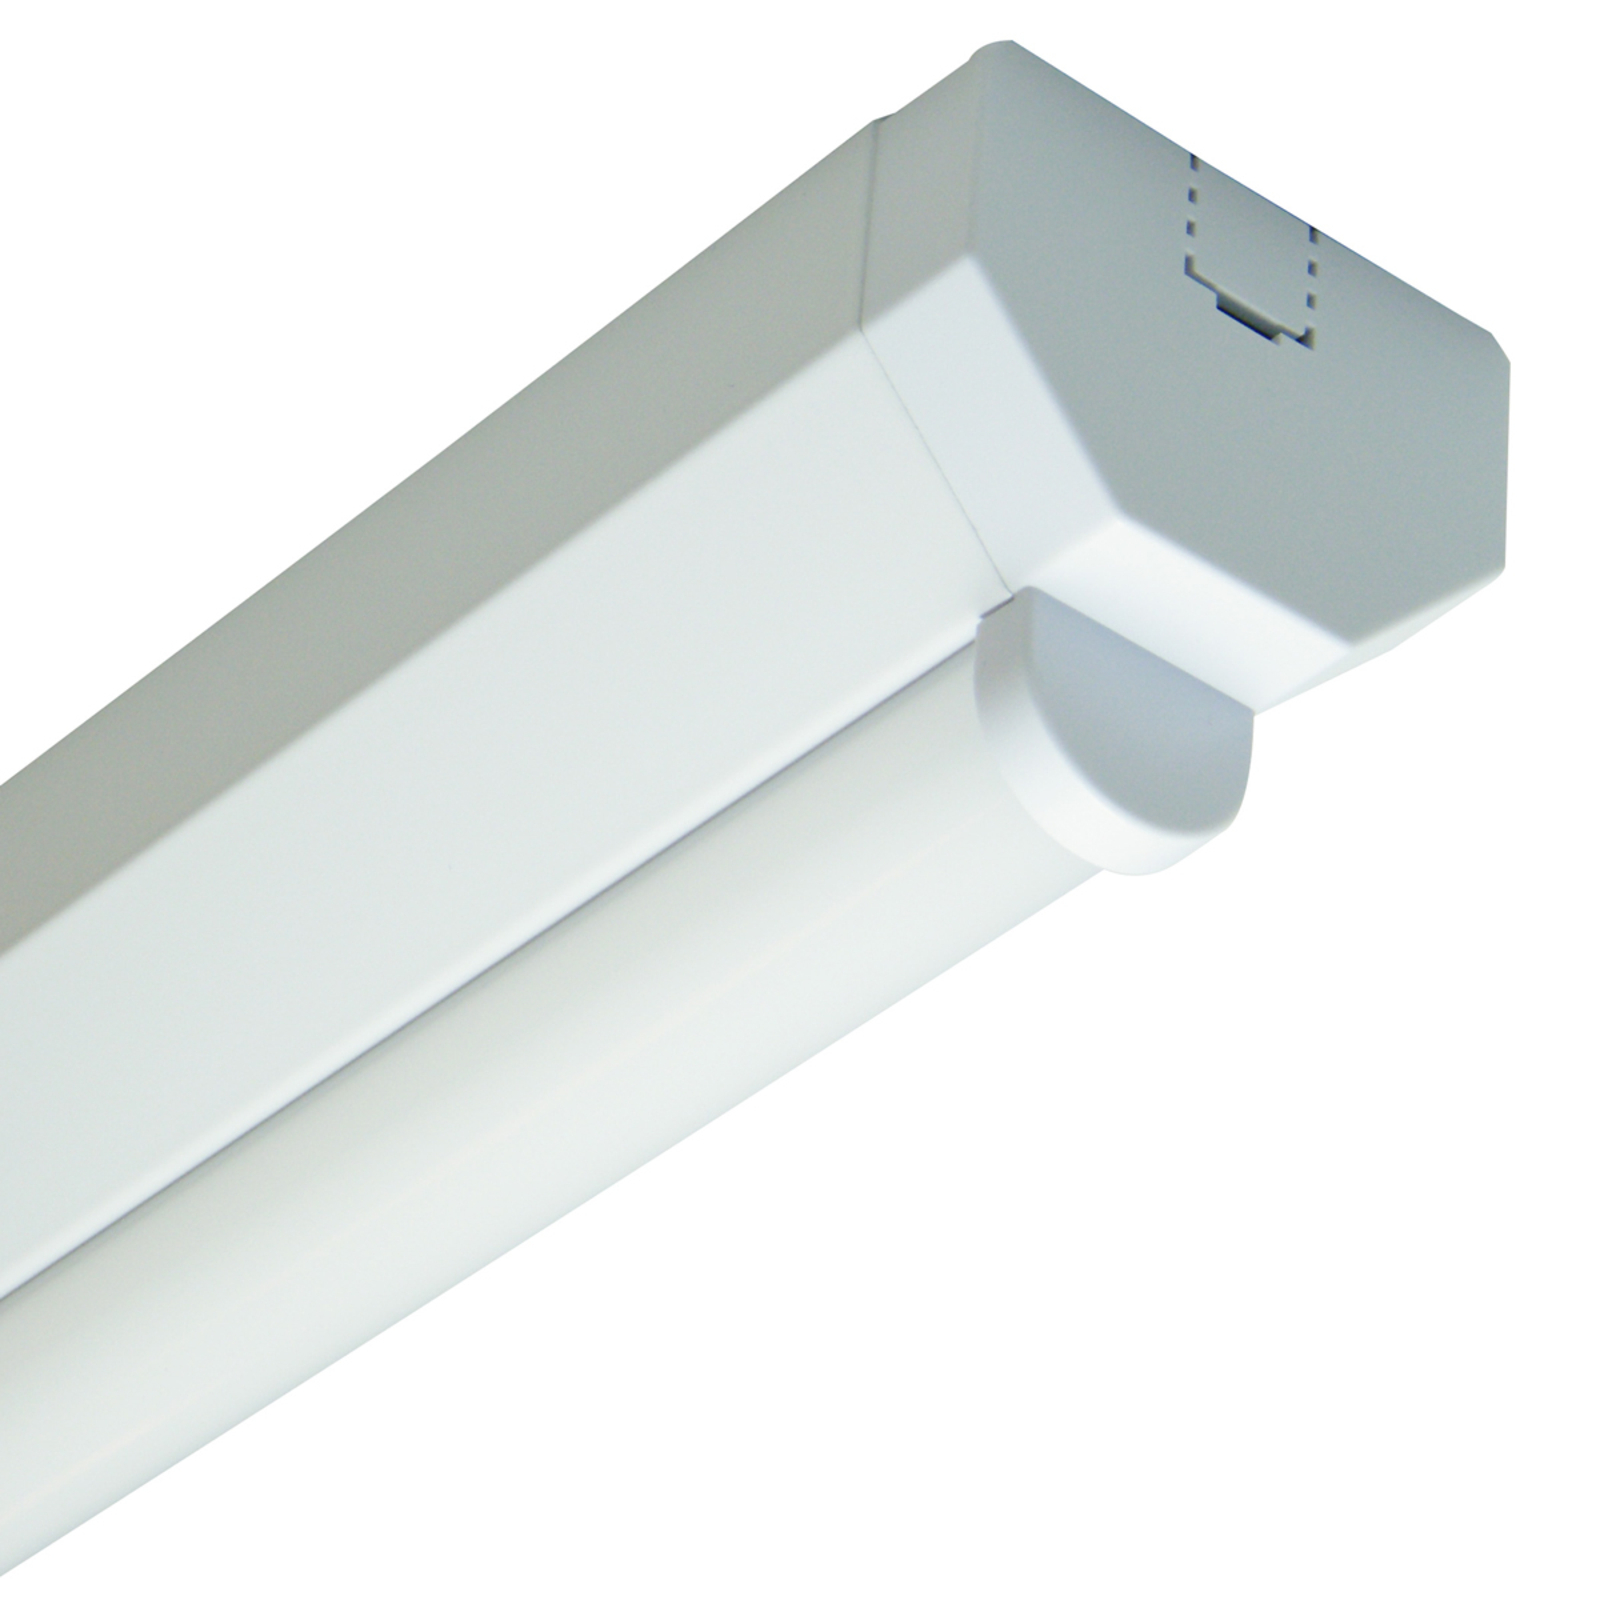 Univerzalna stropna svetilka LED Basic 1 - 150 cm